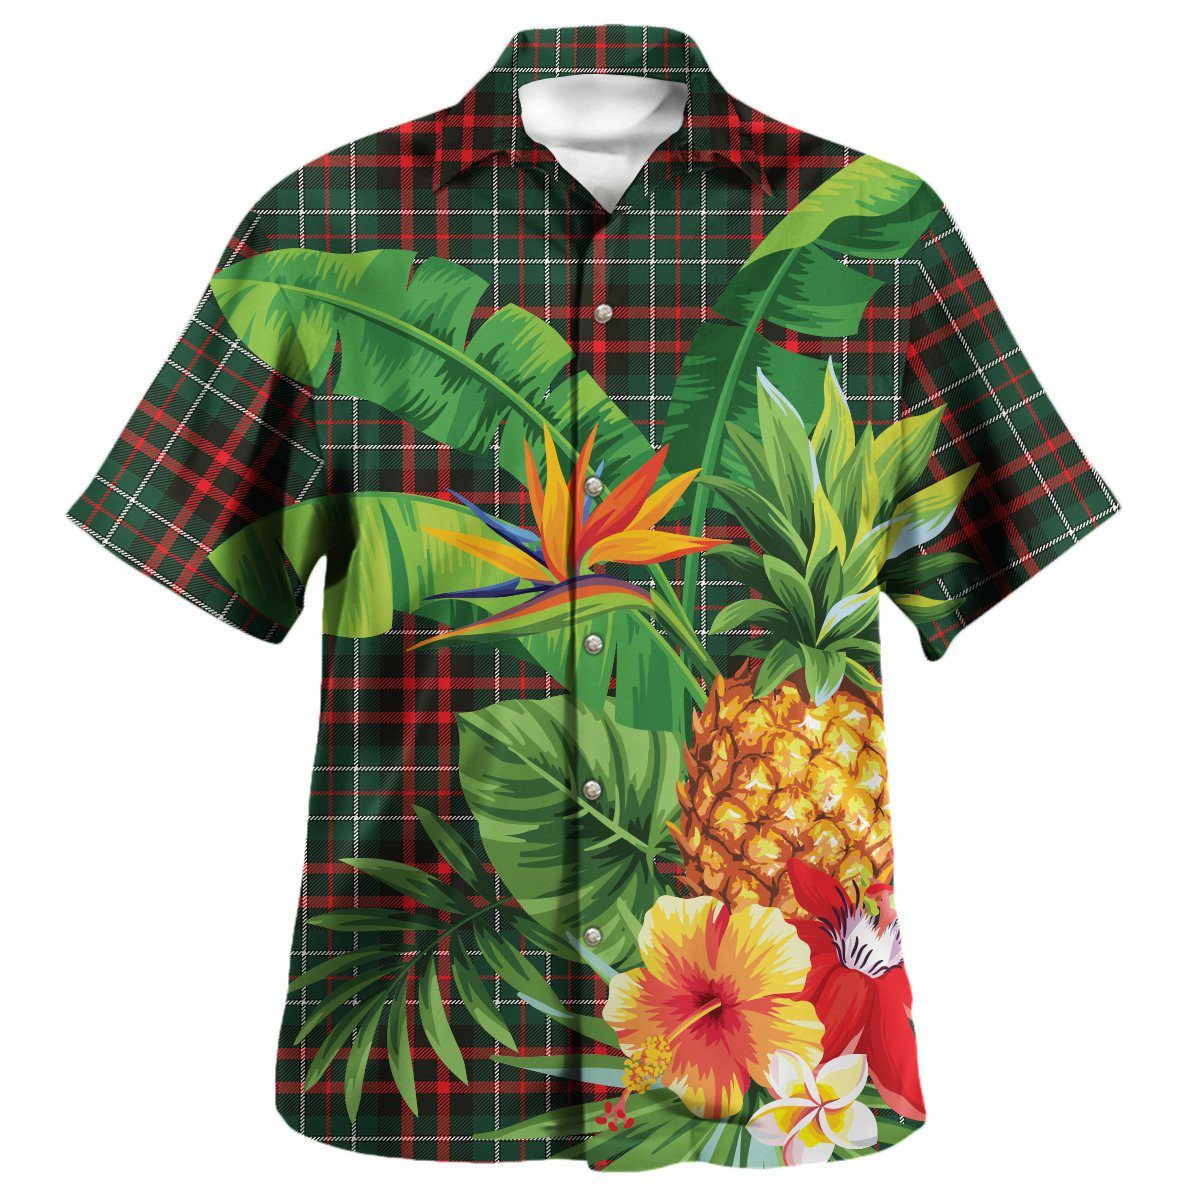 MacDiarmid Modern Tartan Aloha Shirt version 2